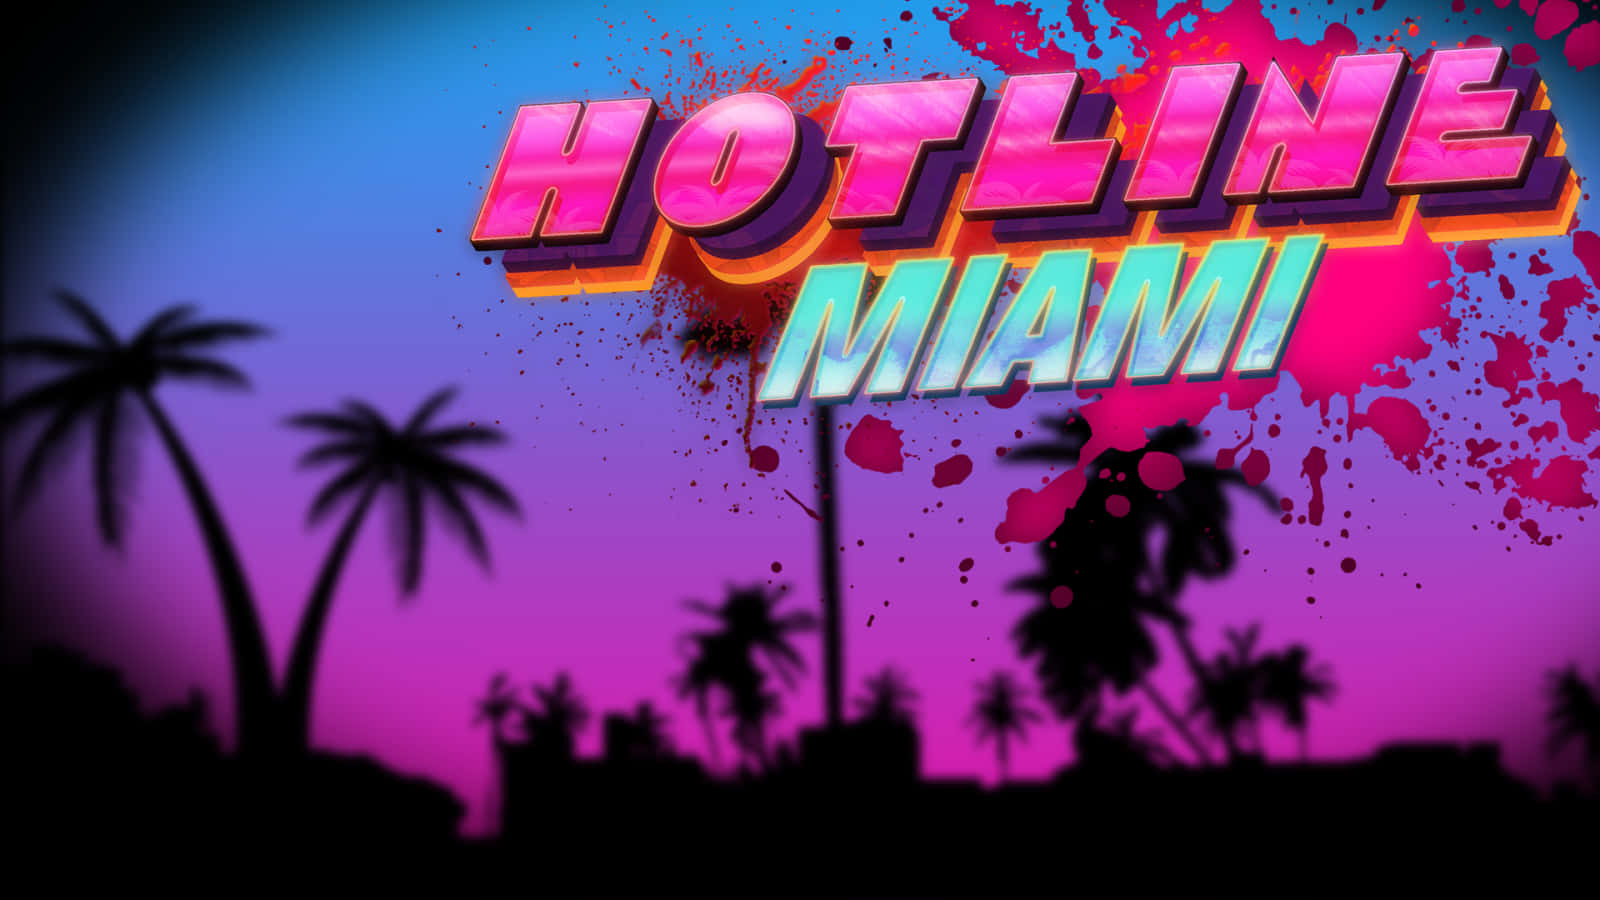 Gameplaydi Hotline Miami In Un'ambientazione Retrò E Neon